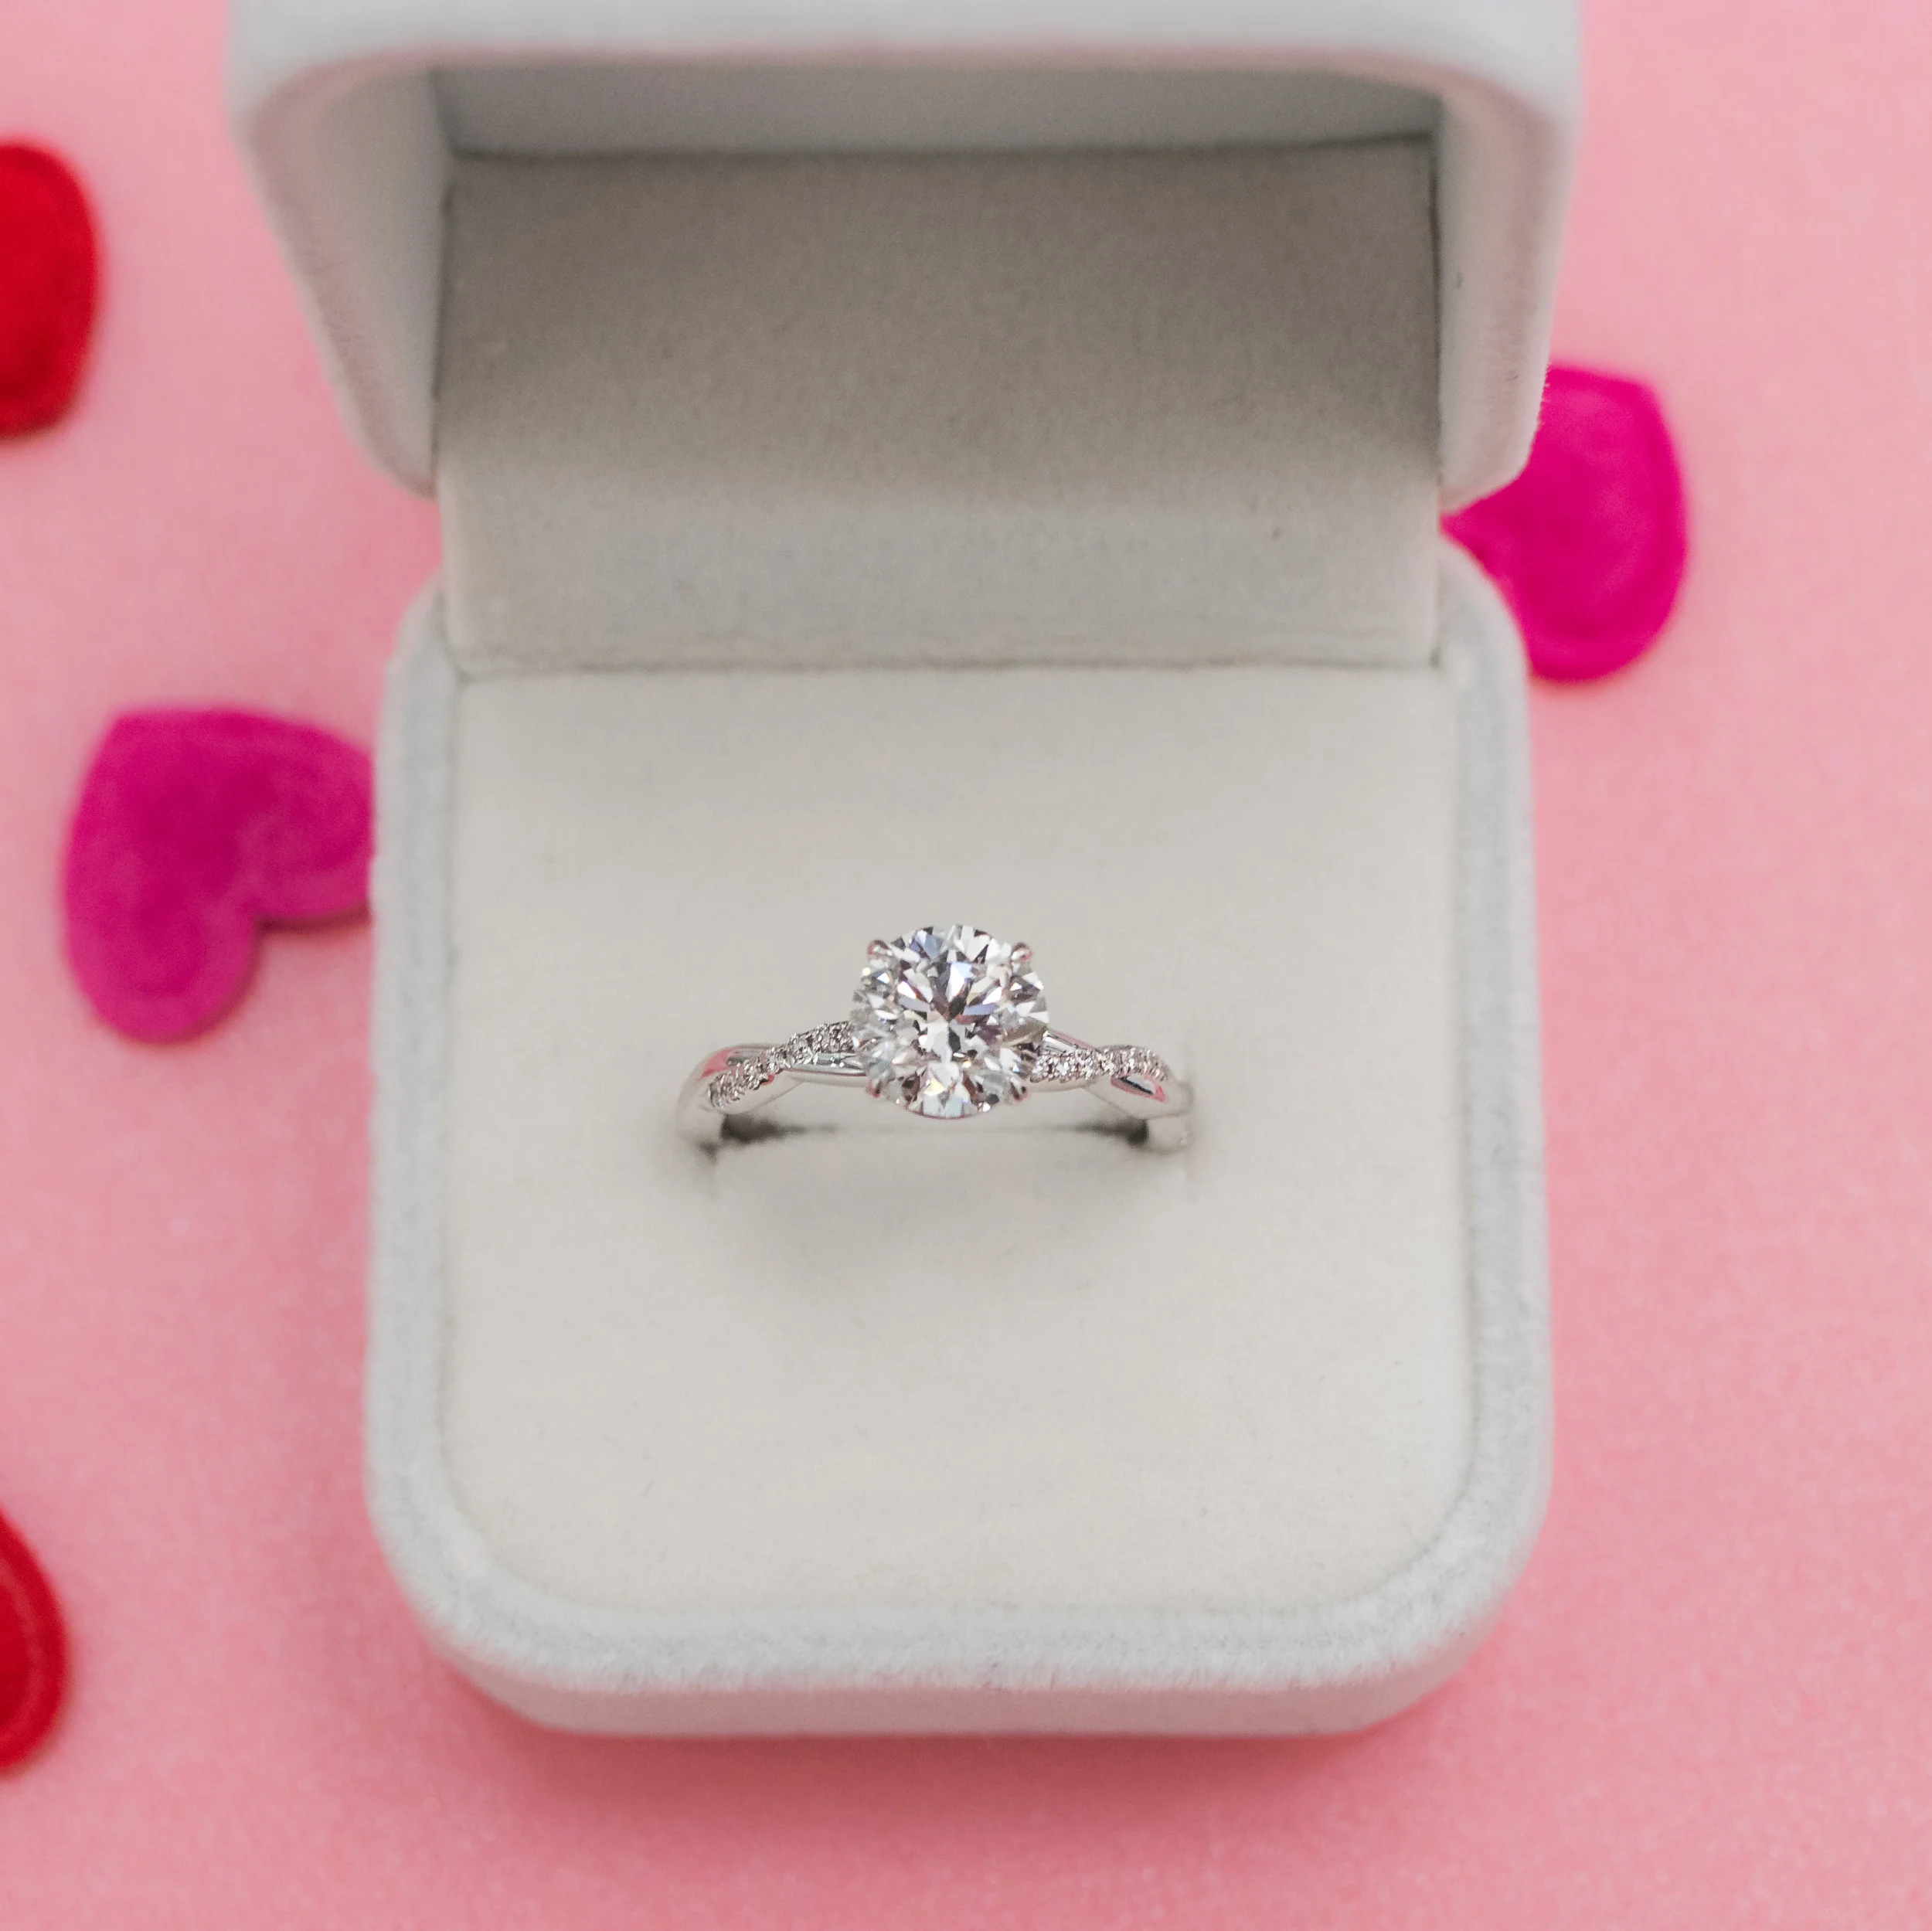 2.0 ct Diamonds set in Platinum Infinity Twist Diamond Engagement Ring (Main View)